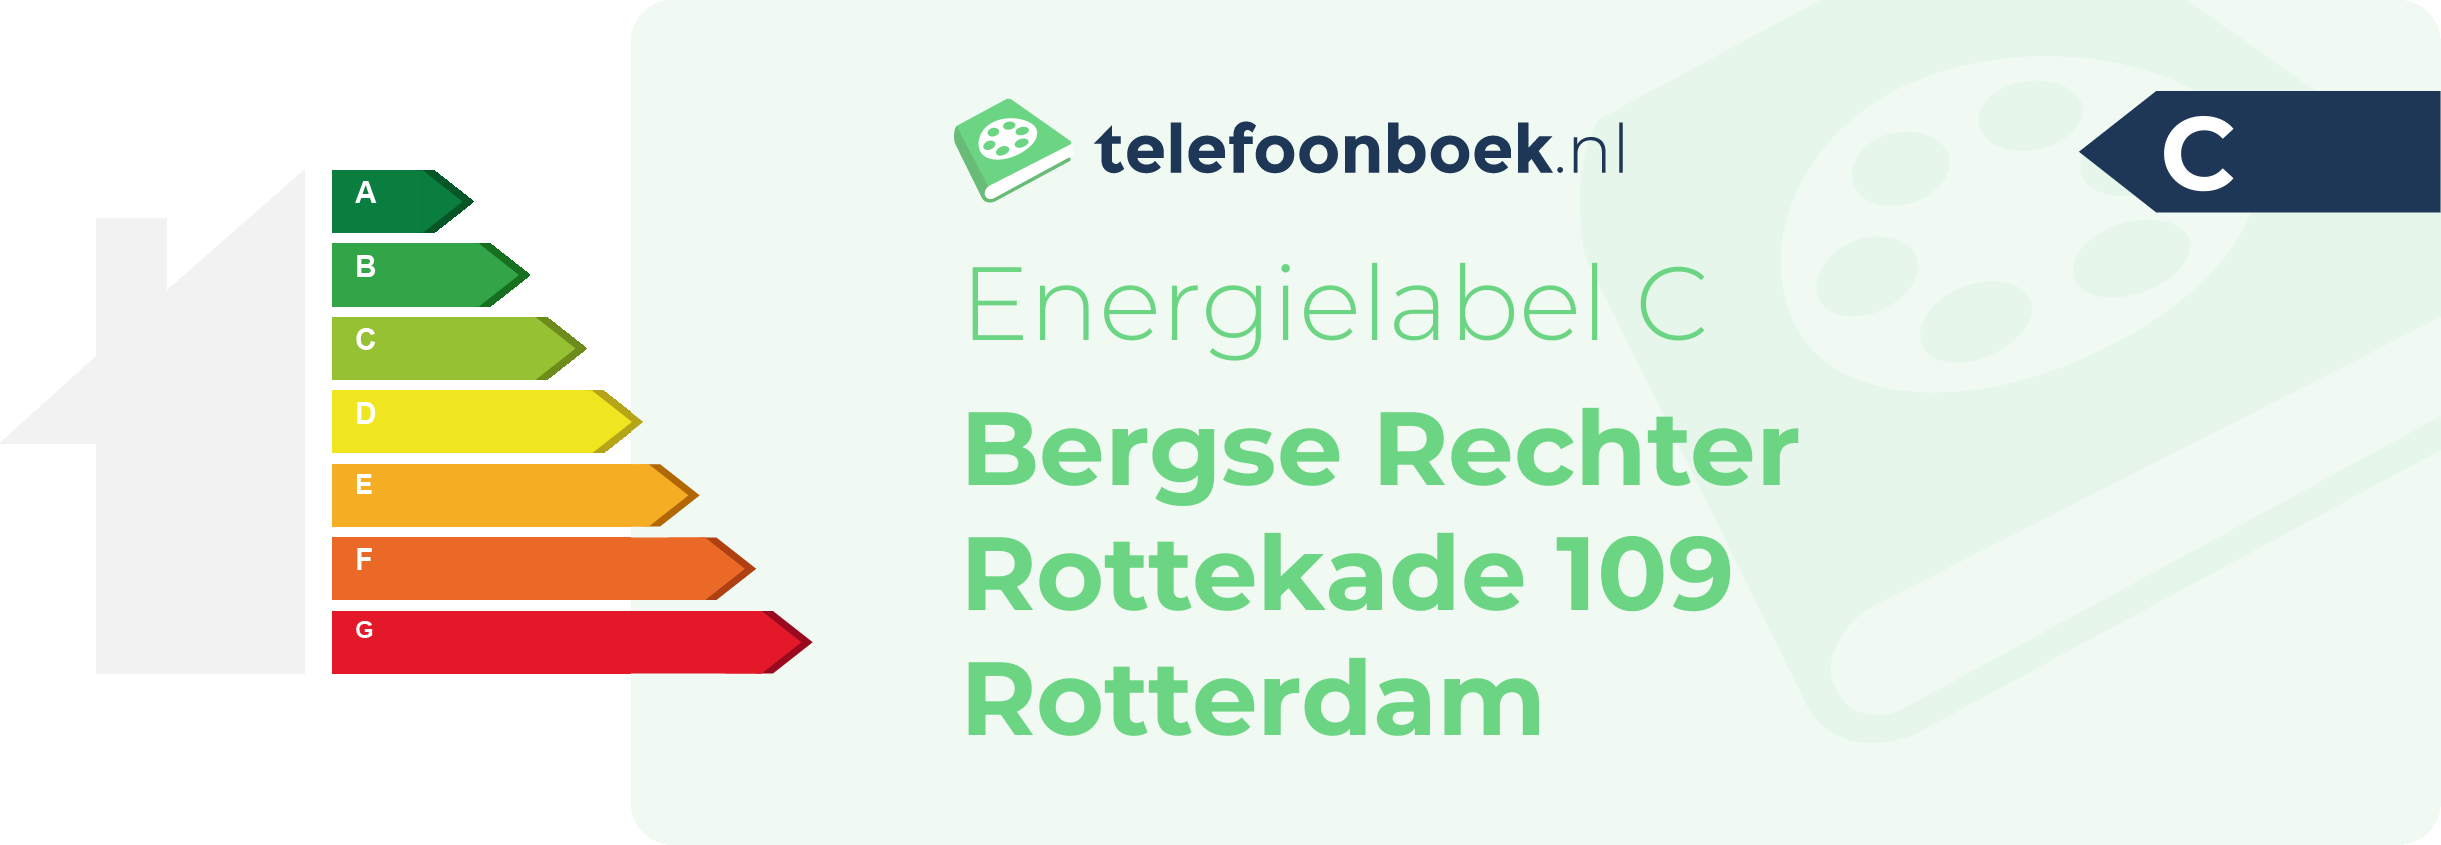 Energielabel Bergse Rechter Rottekade 109 Rotterdam